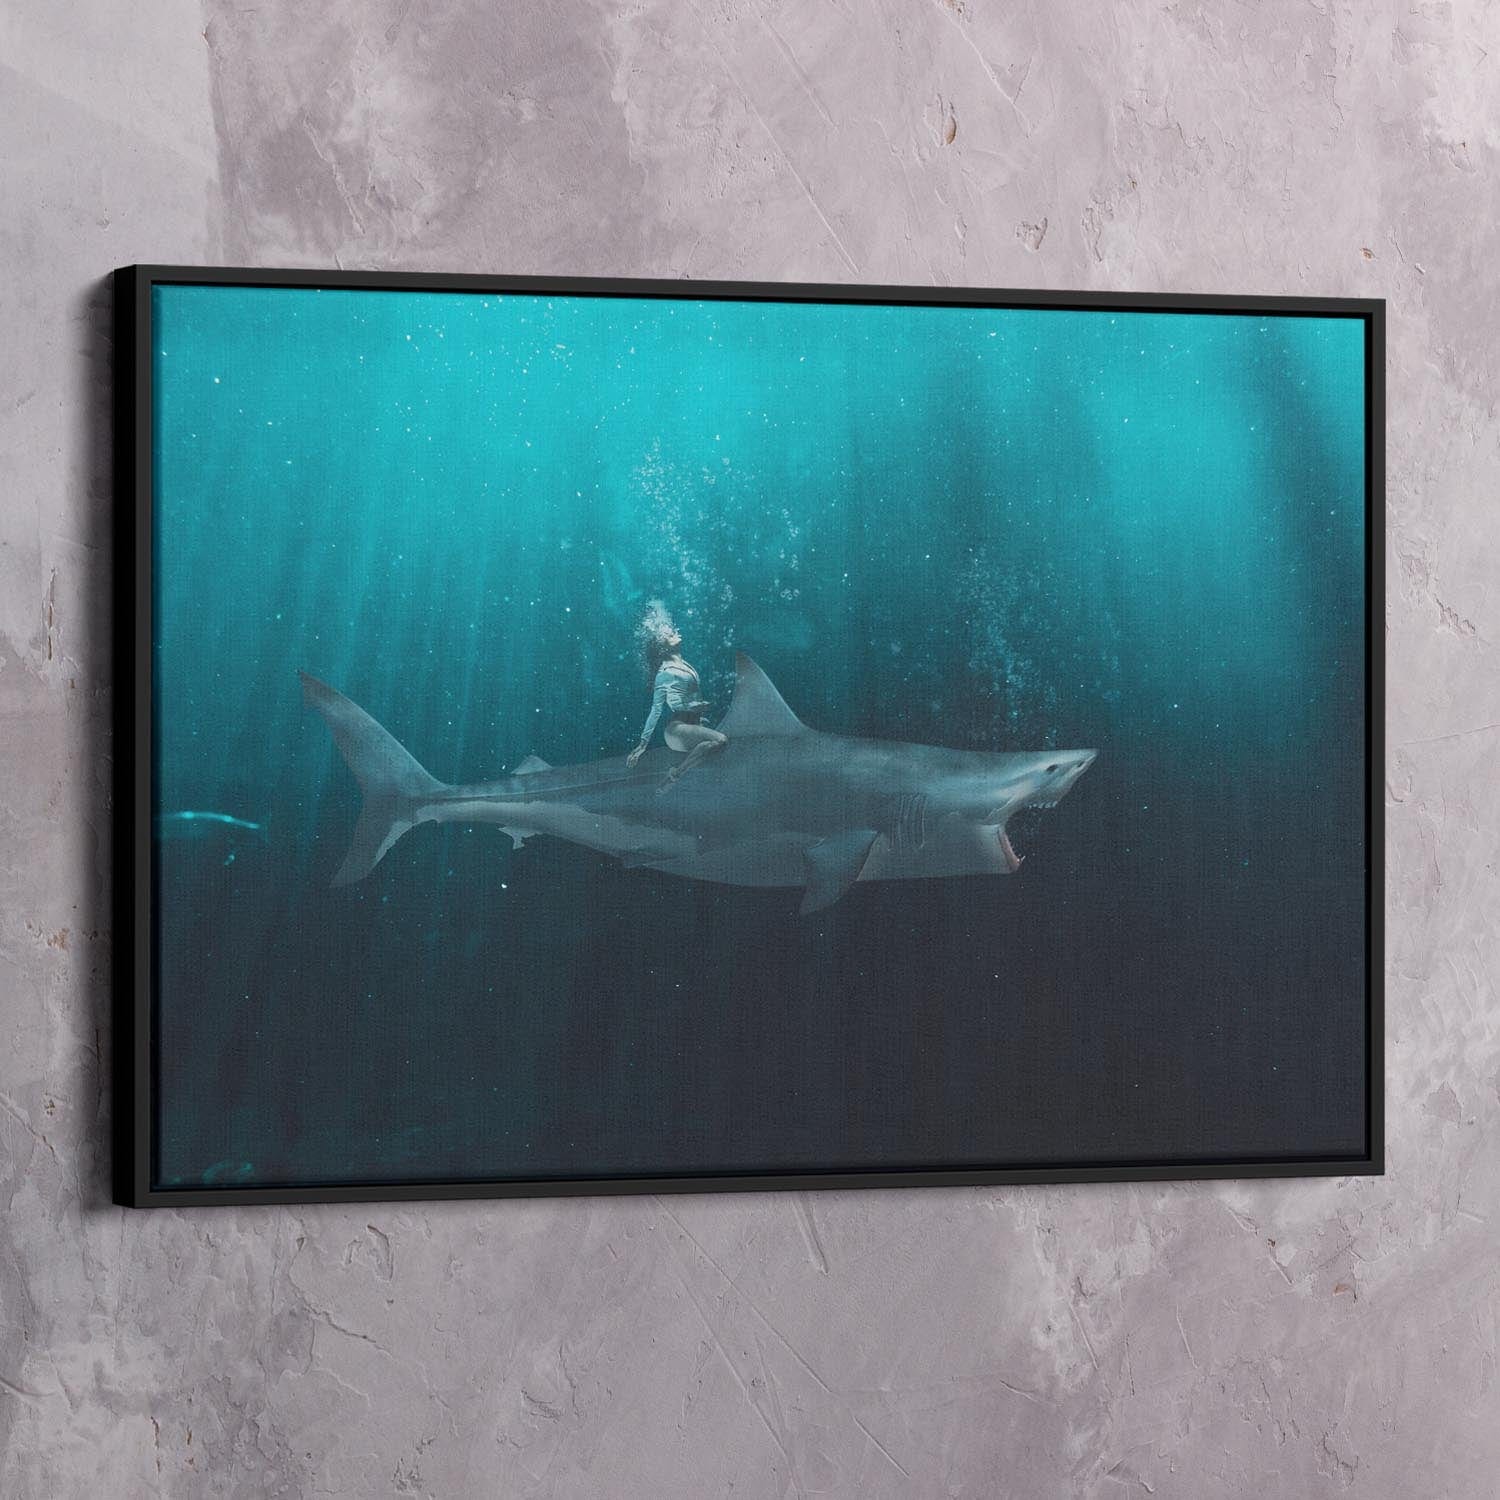 Be Fearless Shark Ride Art Wall Art | Inspirational Wall Art Motivational Wall Art Quotes Office Art | ImpaktMaker Exclusive Canvas Art Landscape